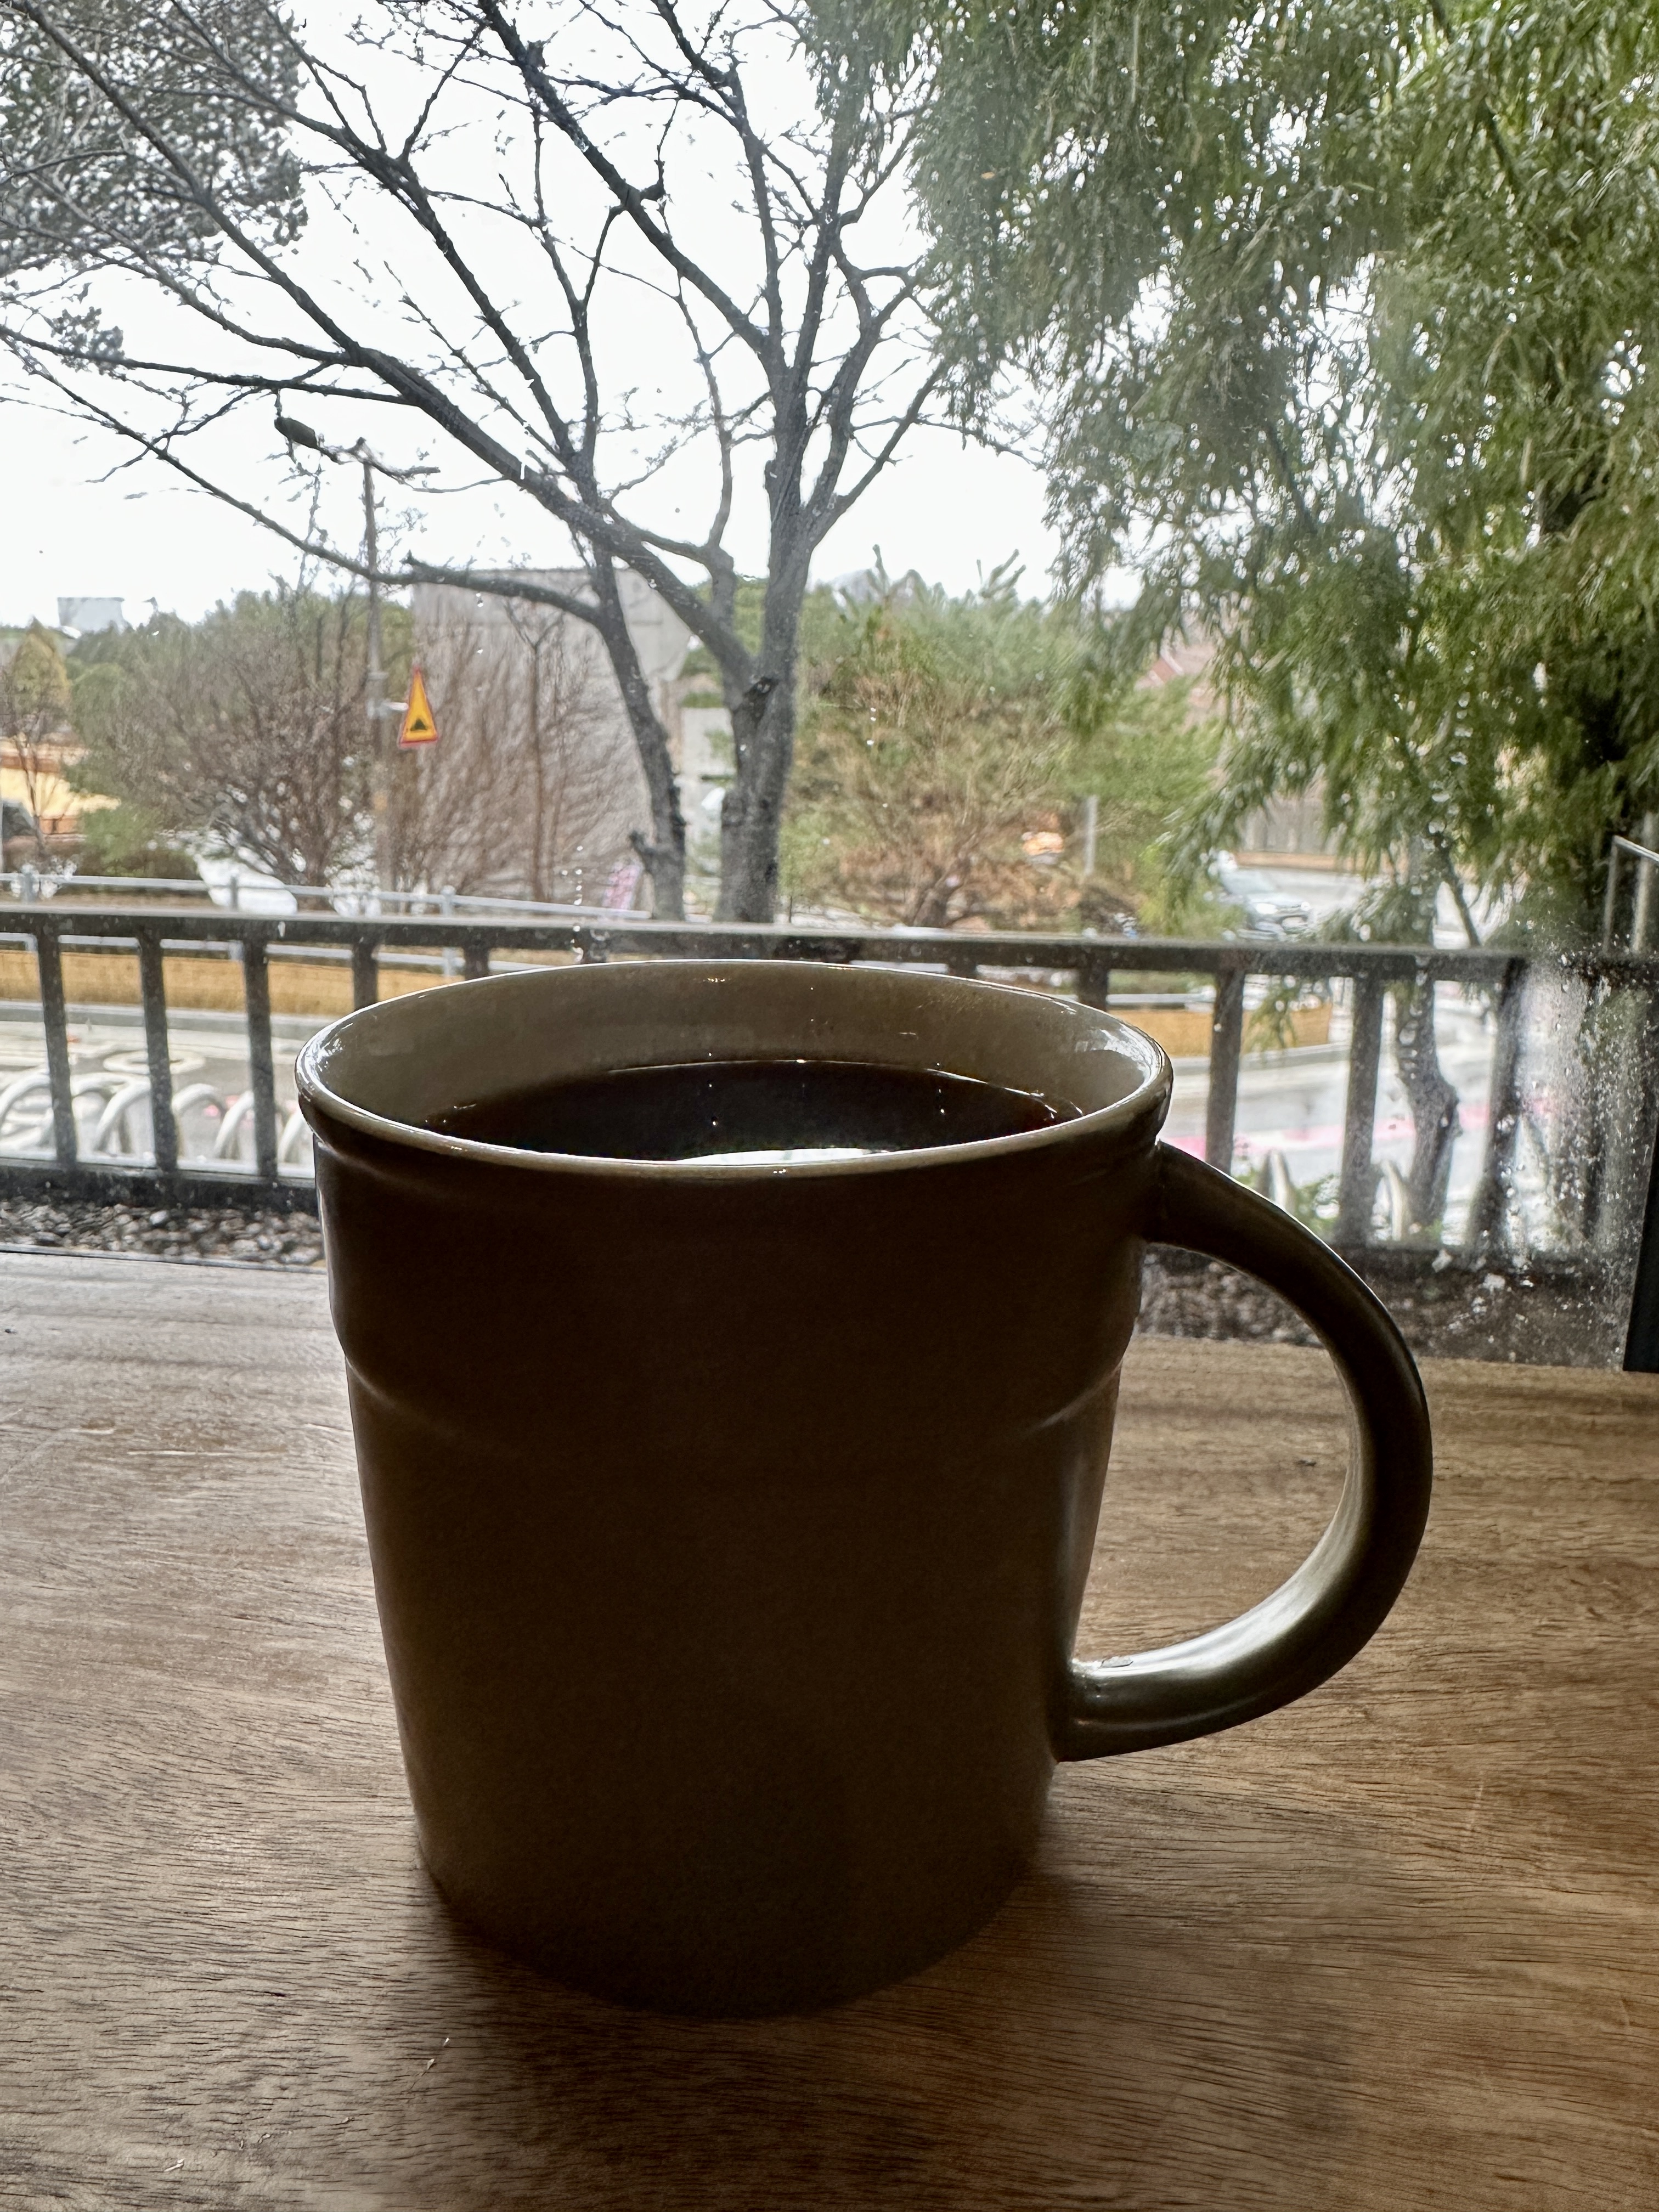 비오는날 커피한잔의 여유